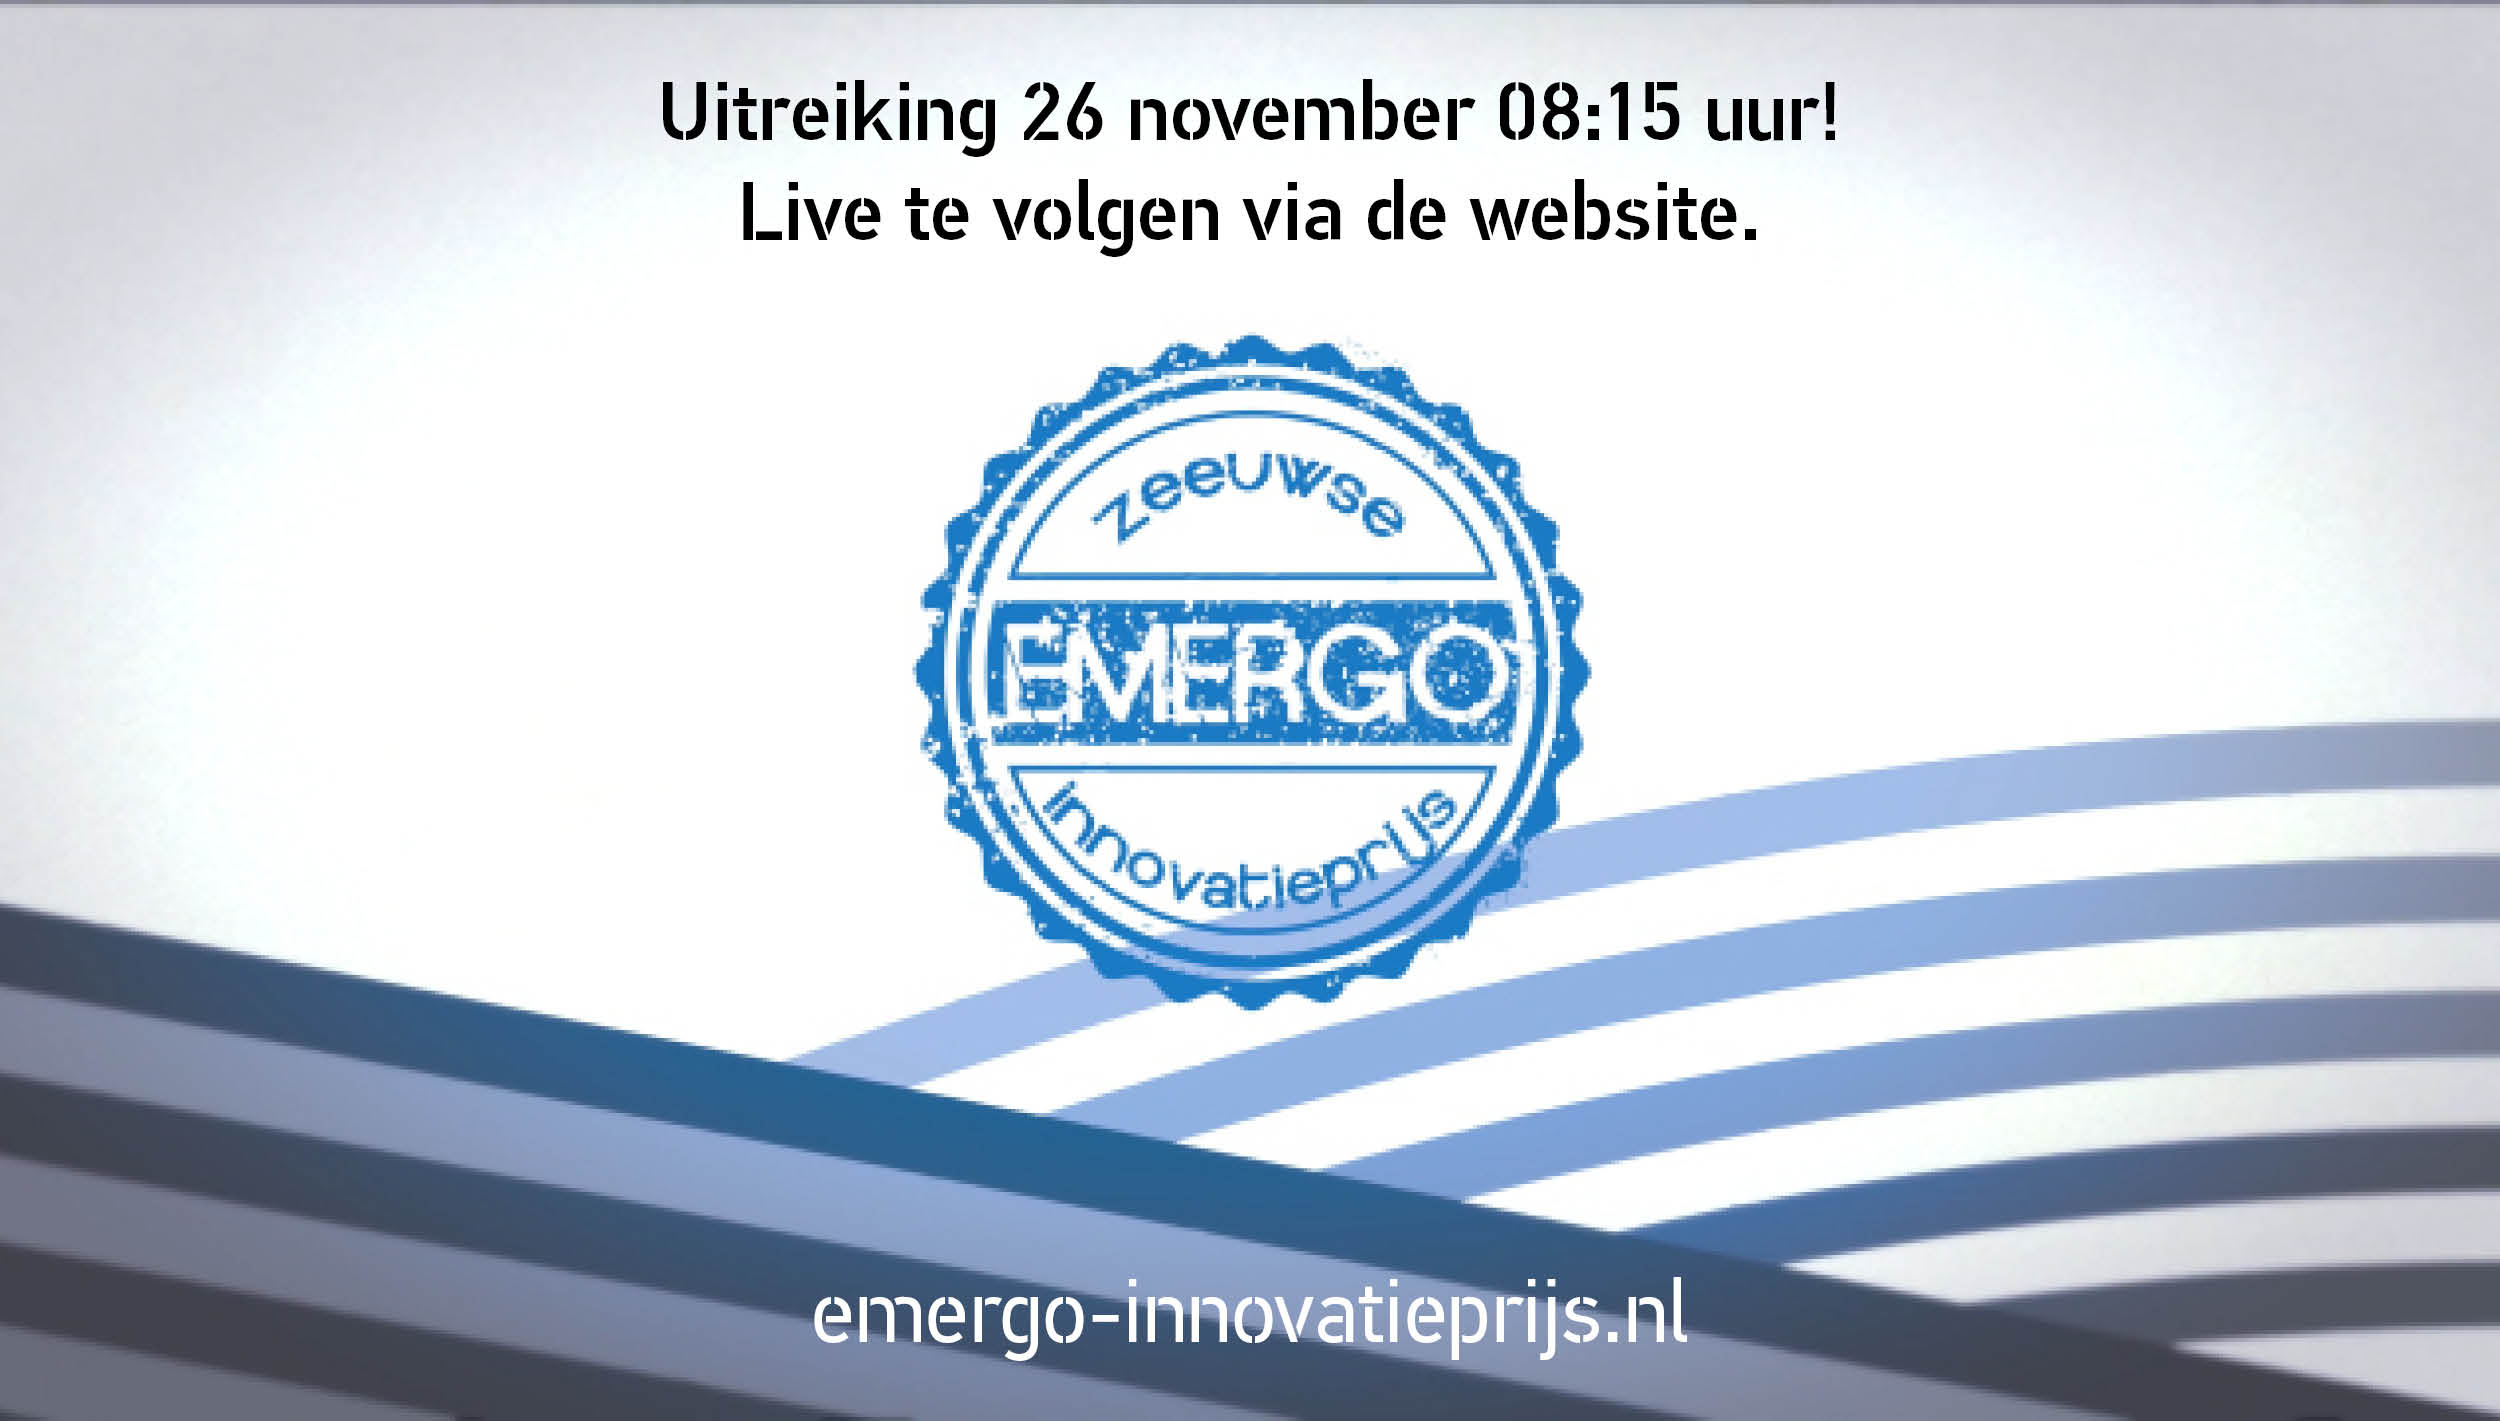 Zeeuwse Emergo Innovatieprijs 2020 uitreiking livestream 26 november 2020